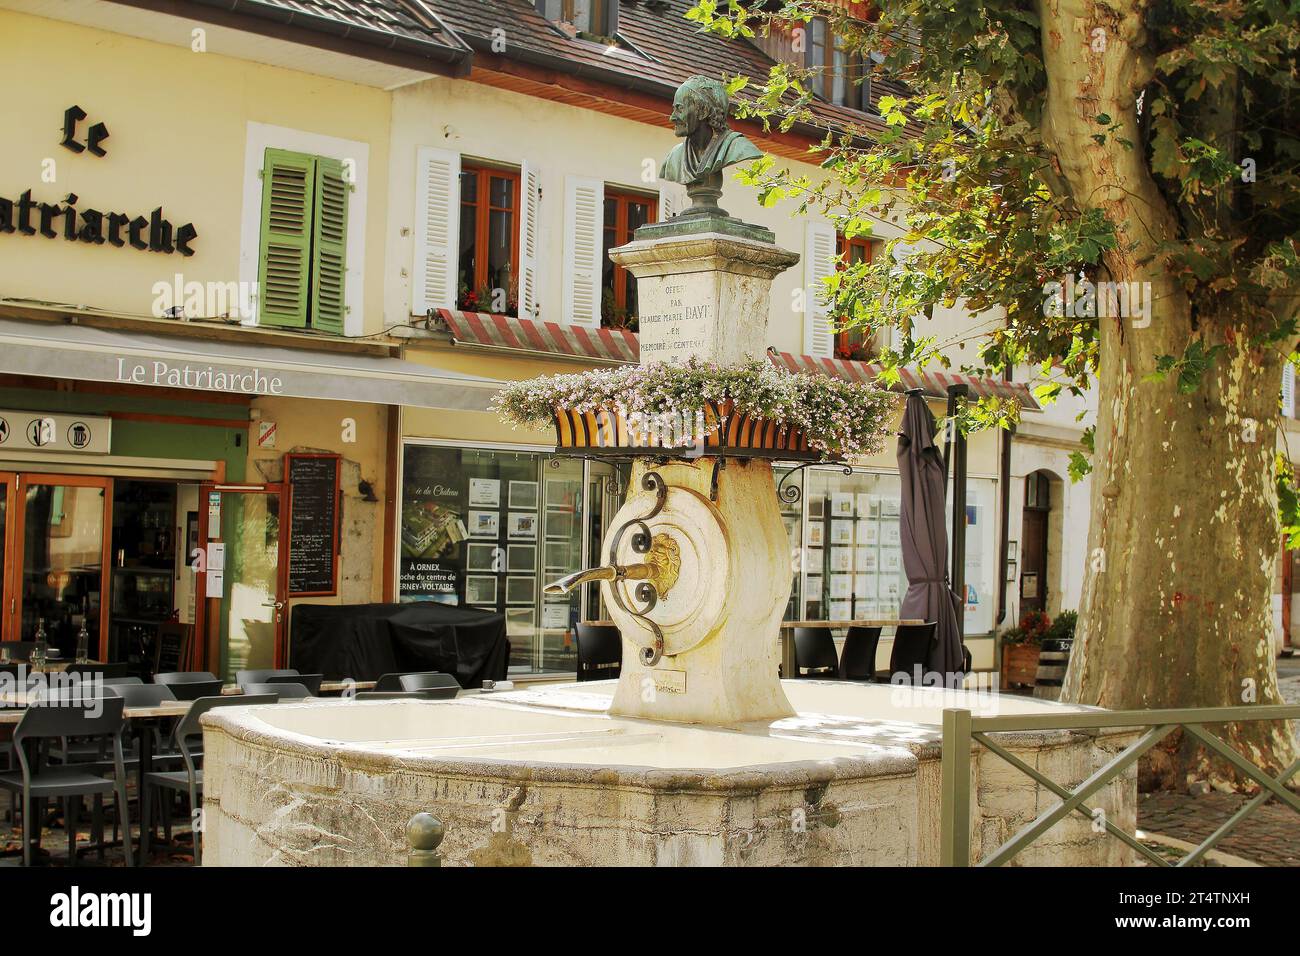 Une belle fontaine ancienne avec un buste de Voltaire près du restaurant Patriarche à Ferney-Voltaire, France. Ferney-Voltaire une ville et commune en F Banque D'Images